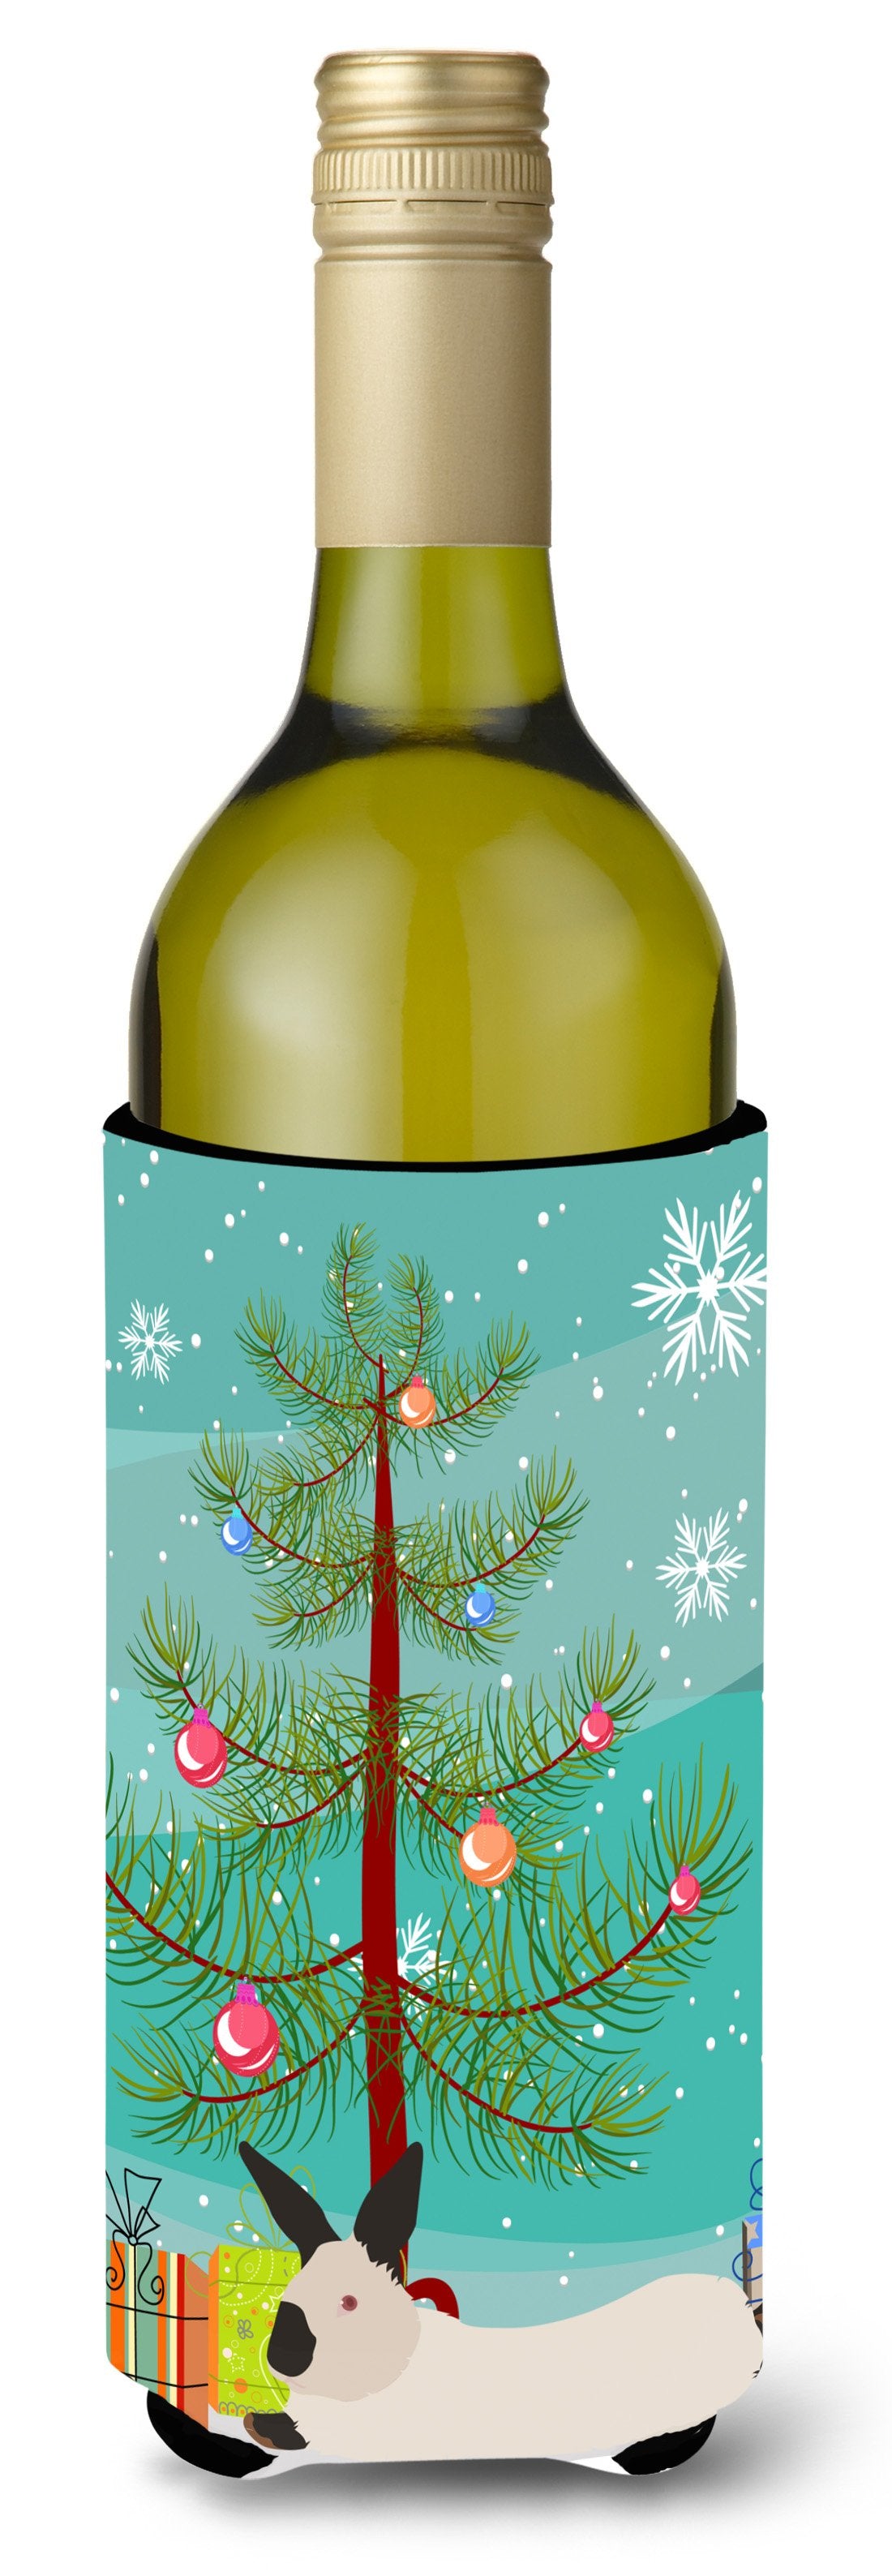 California White Rabbit Christmas Wine Bottle Beverge Insulator Hugger BB9334LITERK by Caroline's Treasures